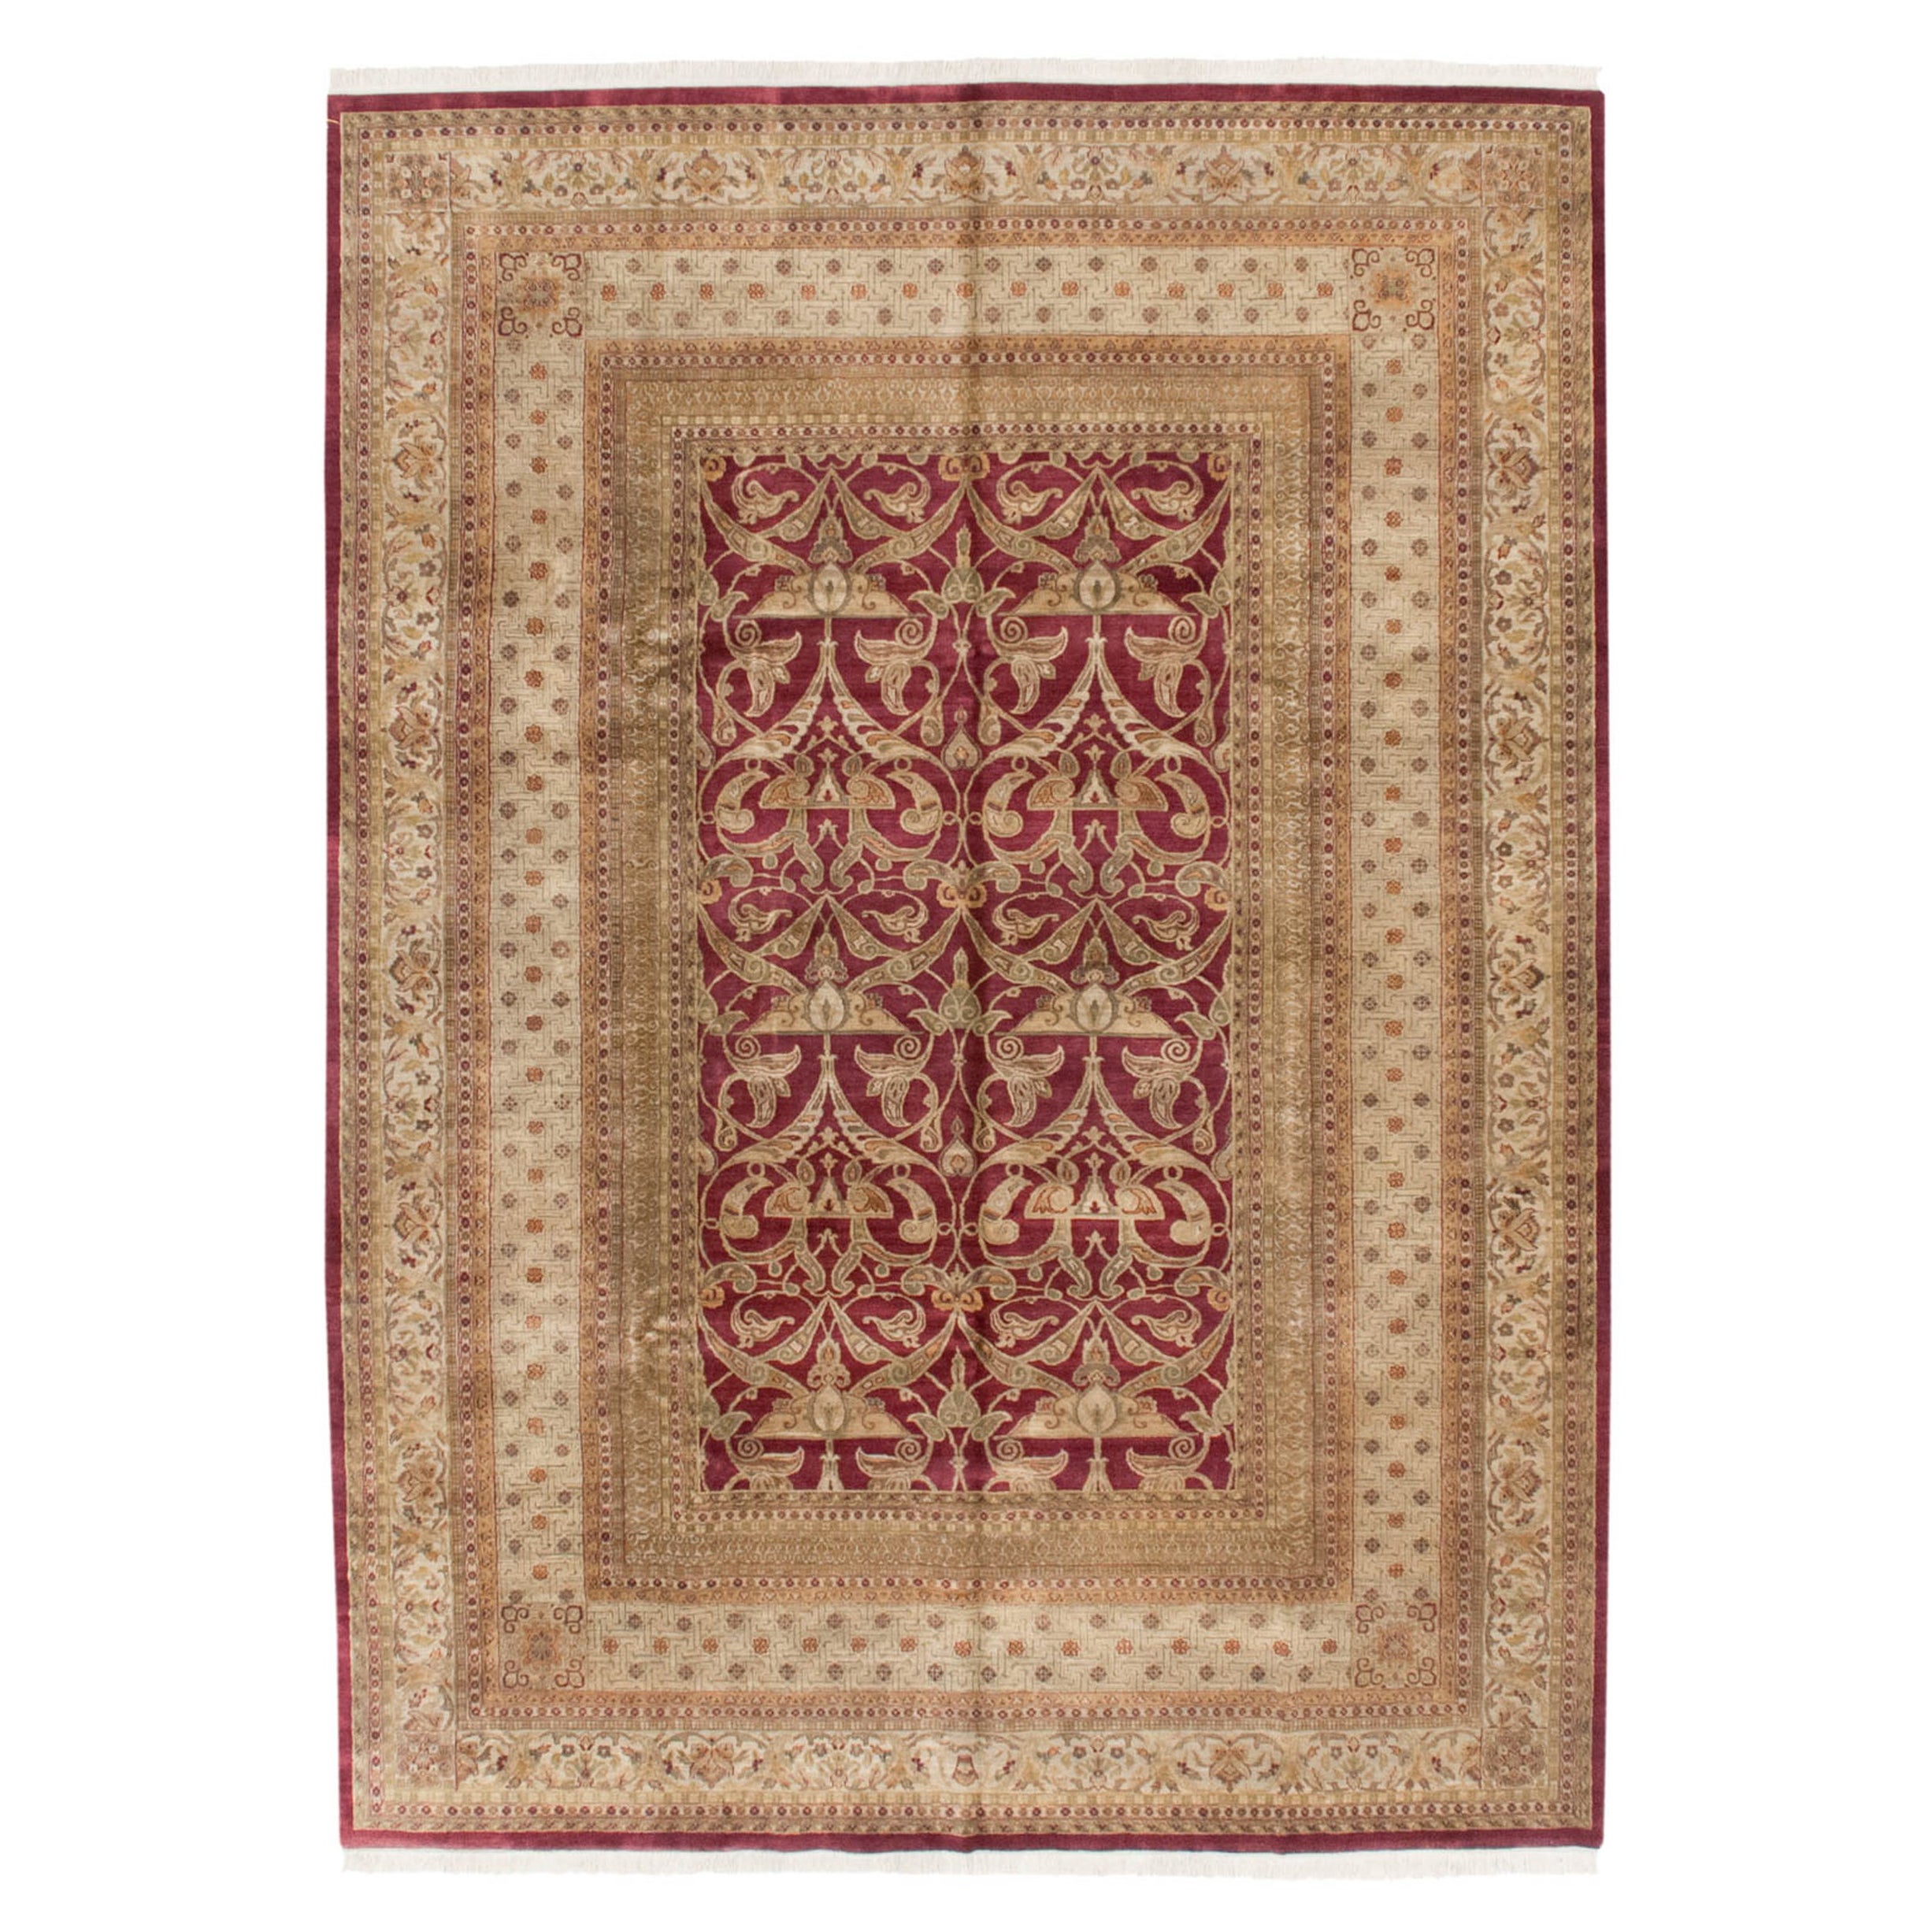 Fine Indian Art Nouveau Design Carpet For Sale